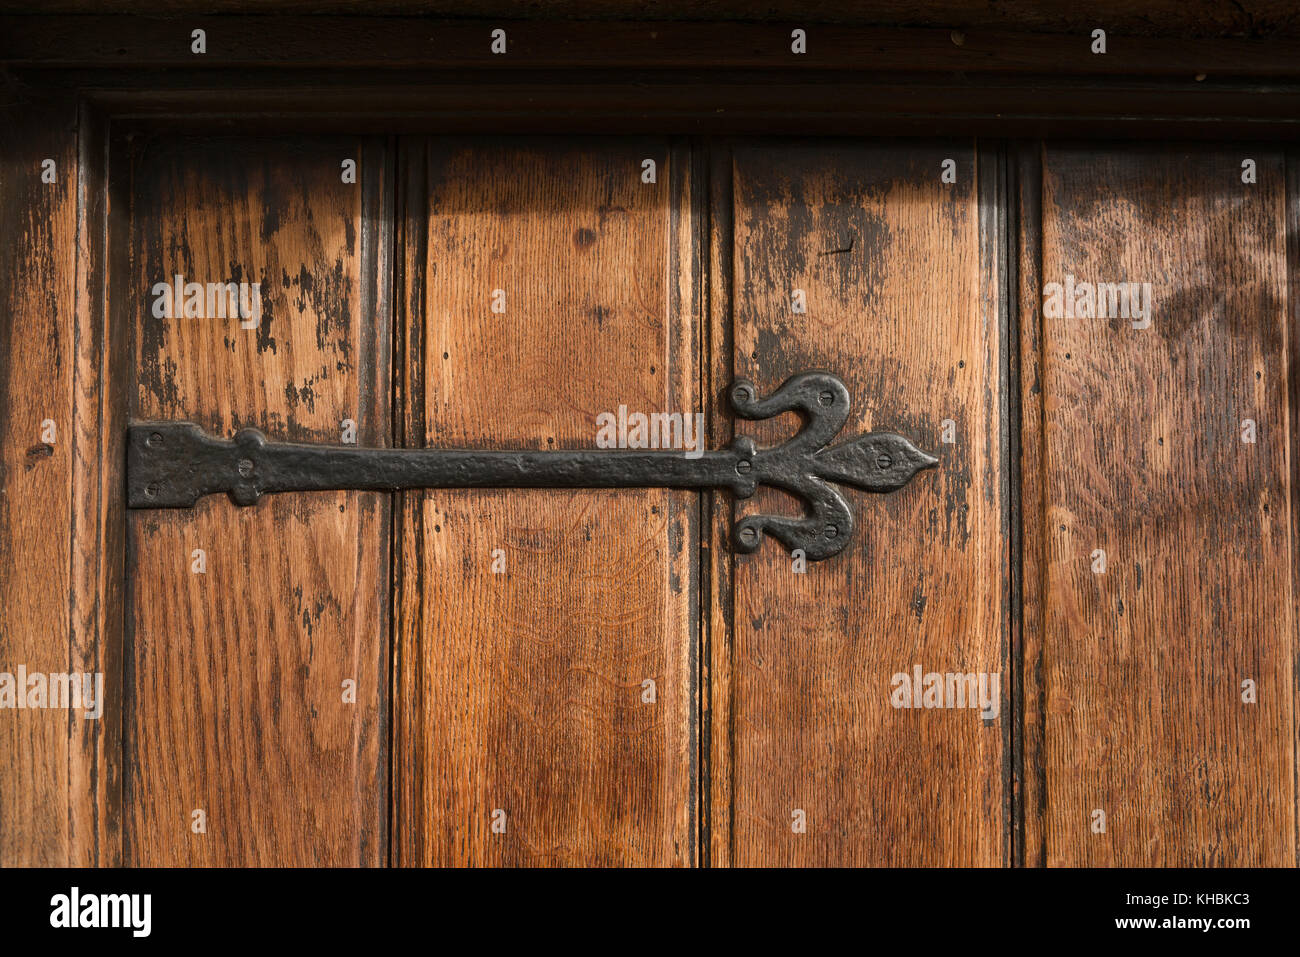 Un sustancial de hierro fundido negro, ornamentado, bisagra de antigüedades montado en un anciano, de lengüeta y ranura de la puerta delantera del roble. Foto de stock